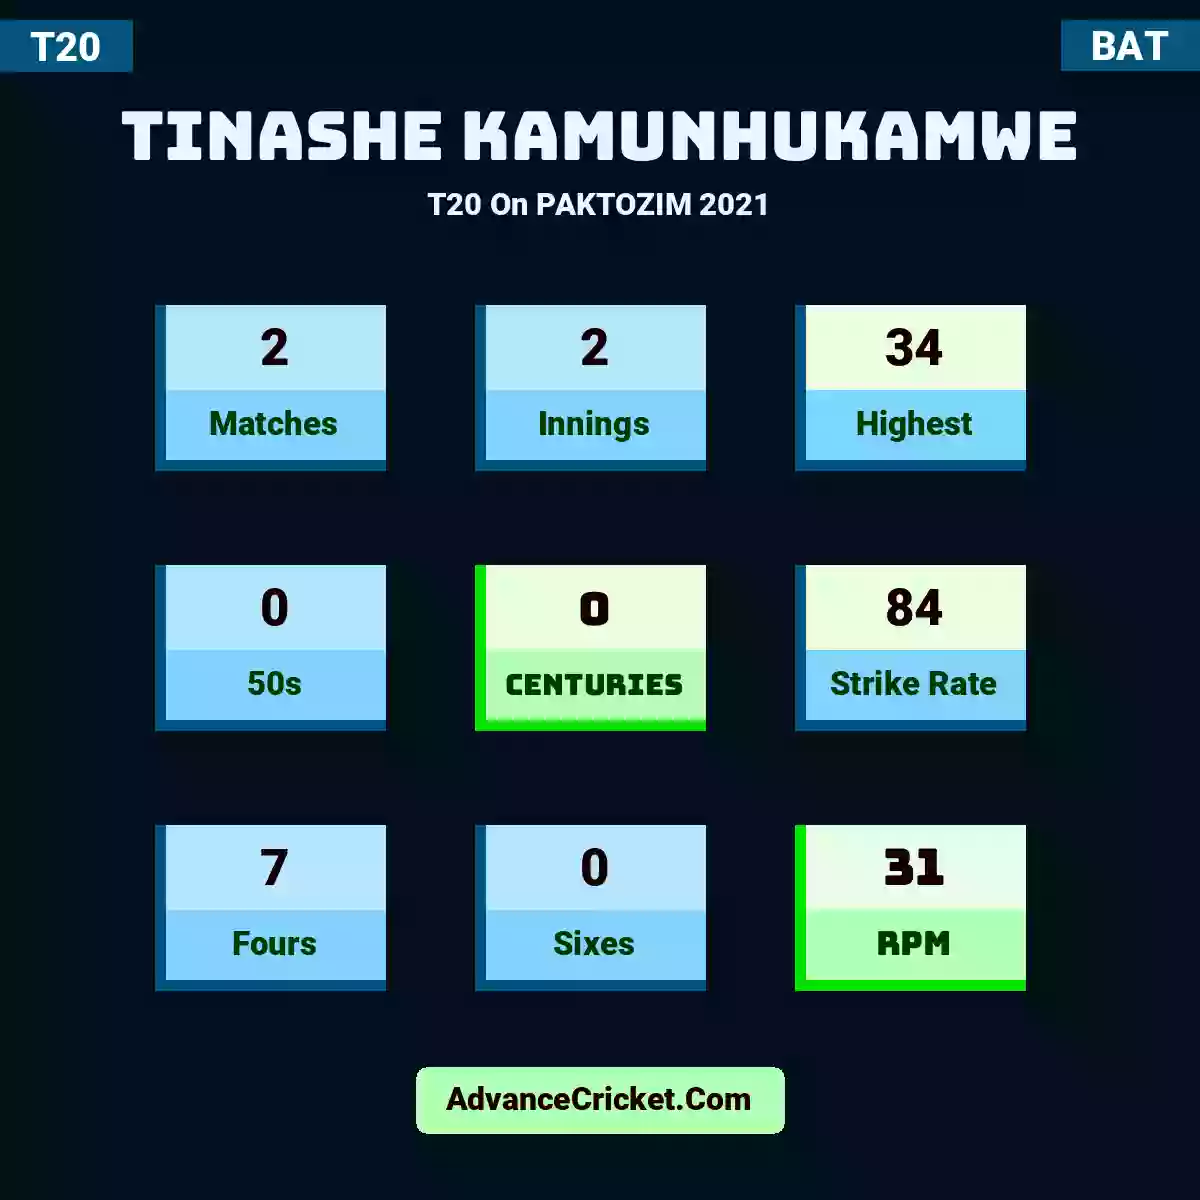 Tinashe Kamunhukamwe T20  On PAKTOZIM 2021, Tinashe Kamunhukamwe played 2 matches, scored 34 runs as highest, 0 half-centuries, and 0 centuries, with a strike rate of 84. T.Kamunhukamwe hit 7 fours and 0 sixes, with an RPM of 31.